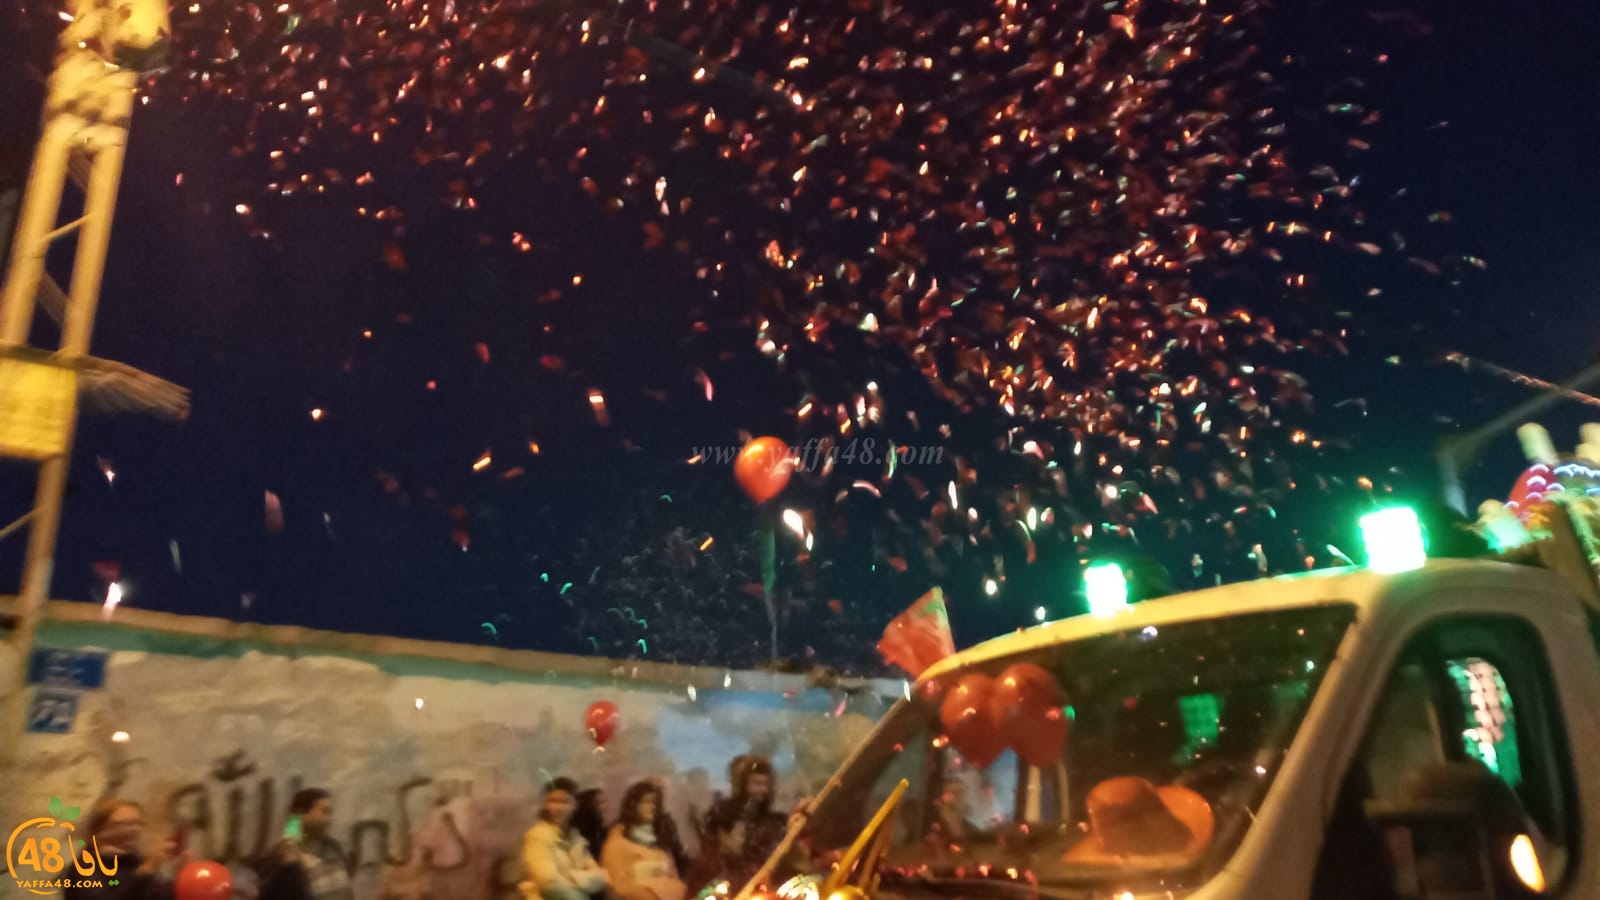 بالفيديو: استعراض كشفي في مدينة يافا بمناسبة عيد الميلاد المجيد